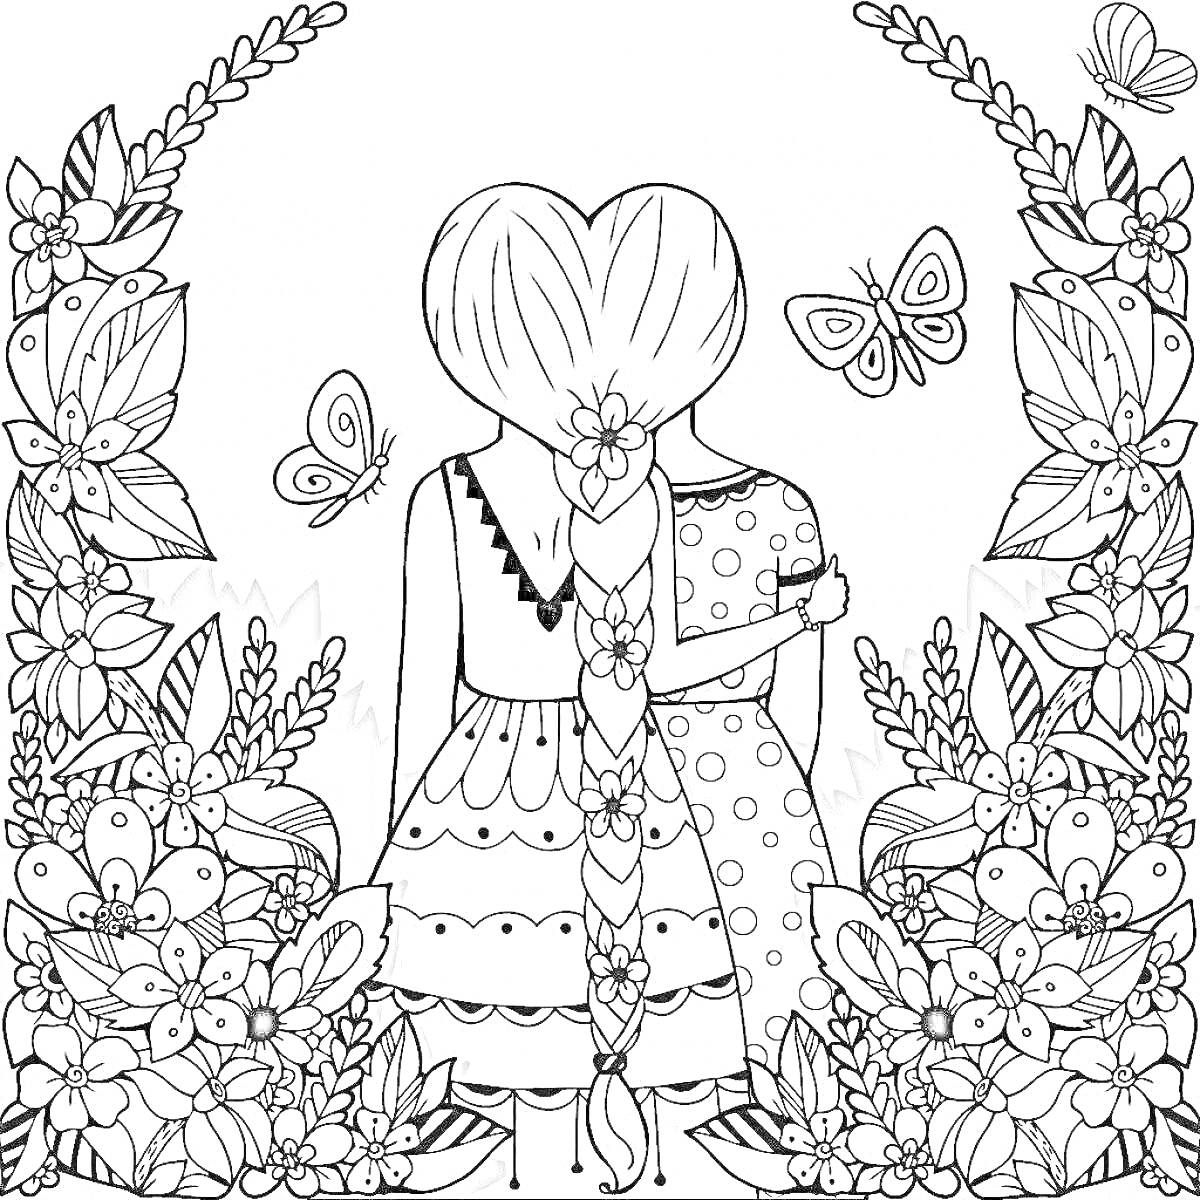 Раскраска Девочки с длинными косами на фоне природы с цветами и бабочками